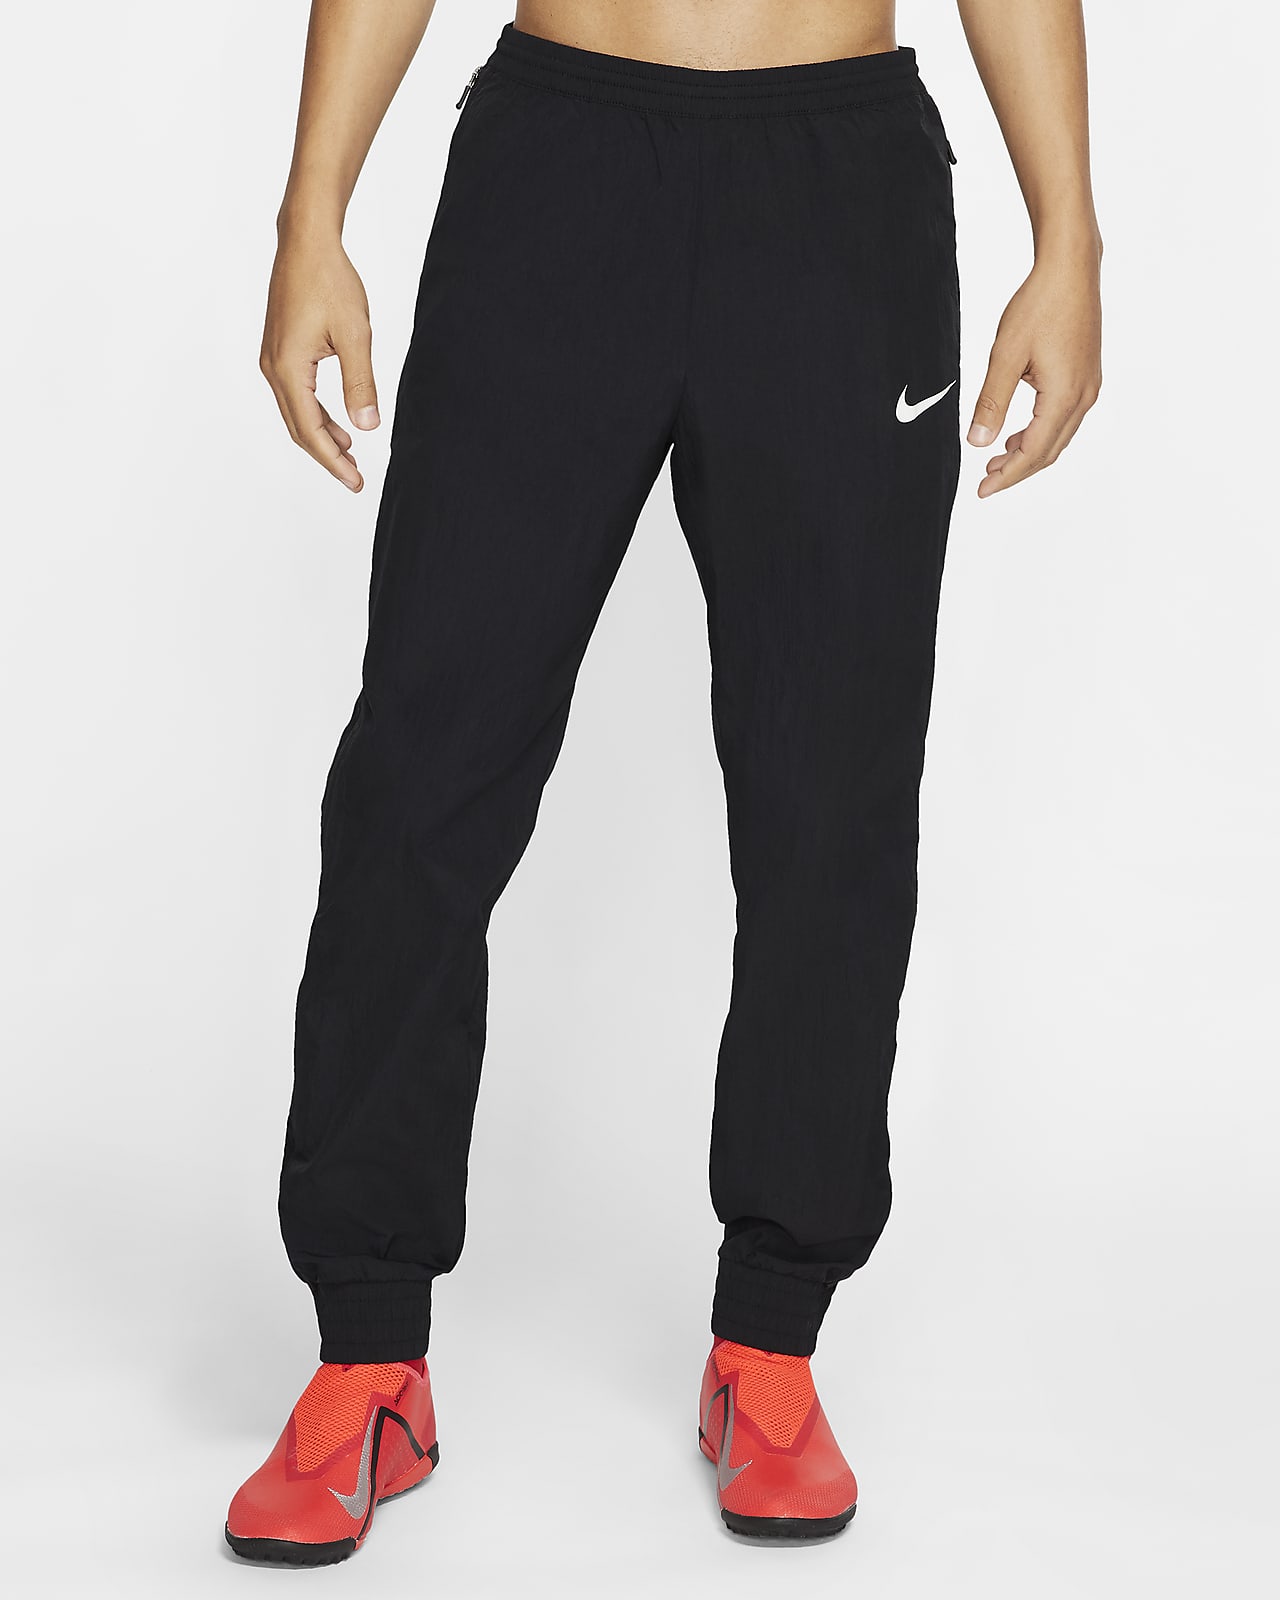 Nike F.C. Men's Woven Football Pants